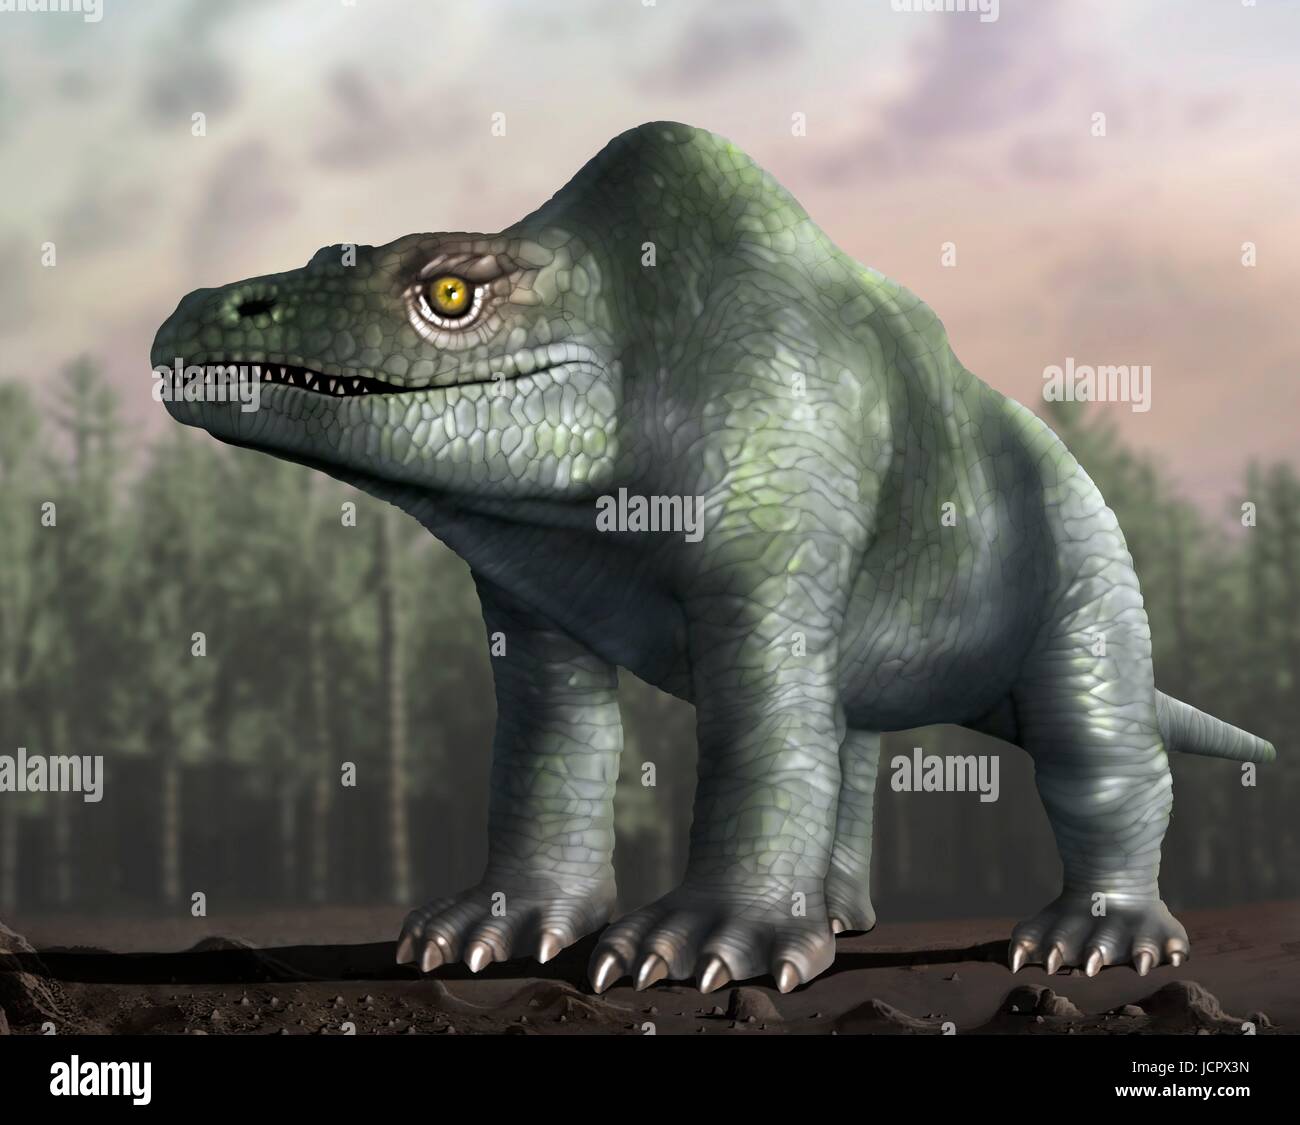 Es Megalosaurus género extintos dinosaurios que comen carne,los  terópodos,desde mediados del período Jurásico en la historia de la  tierra,166 millones de añó en lo que ahora es el sur de   primer